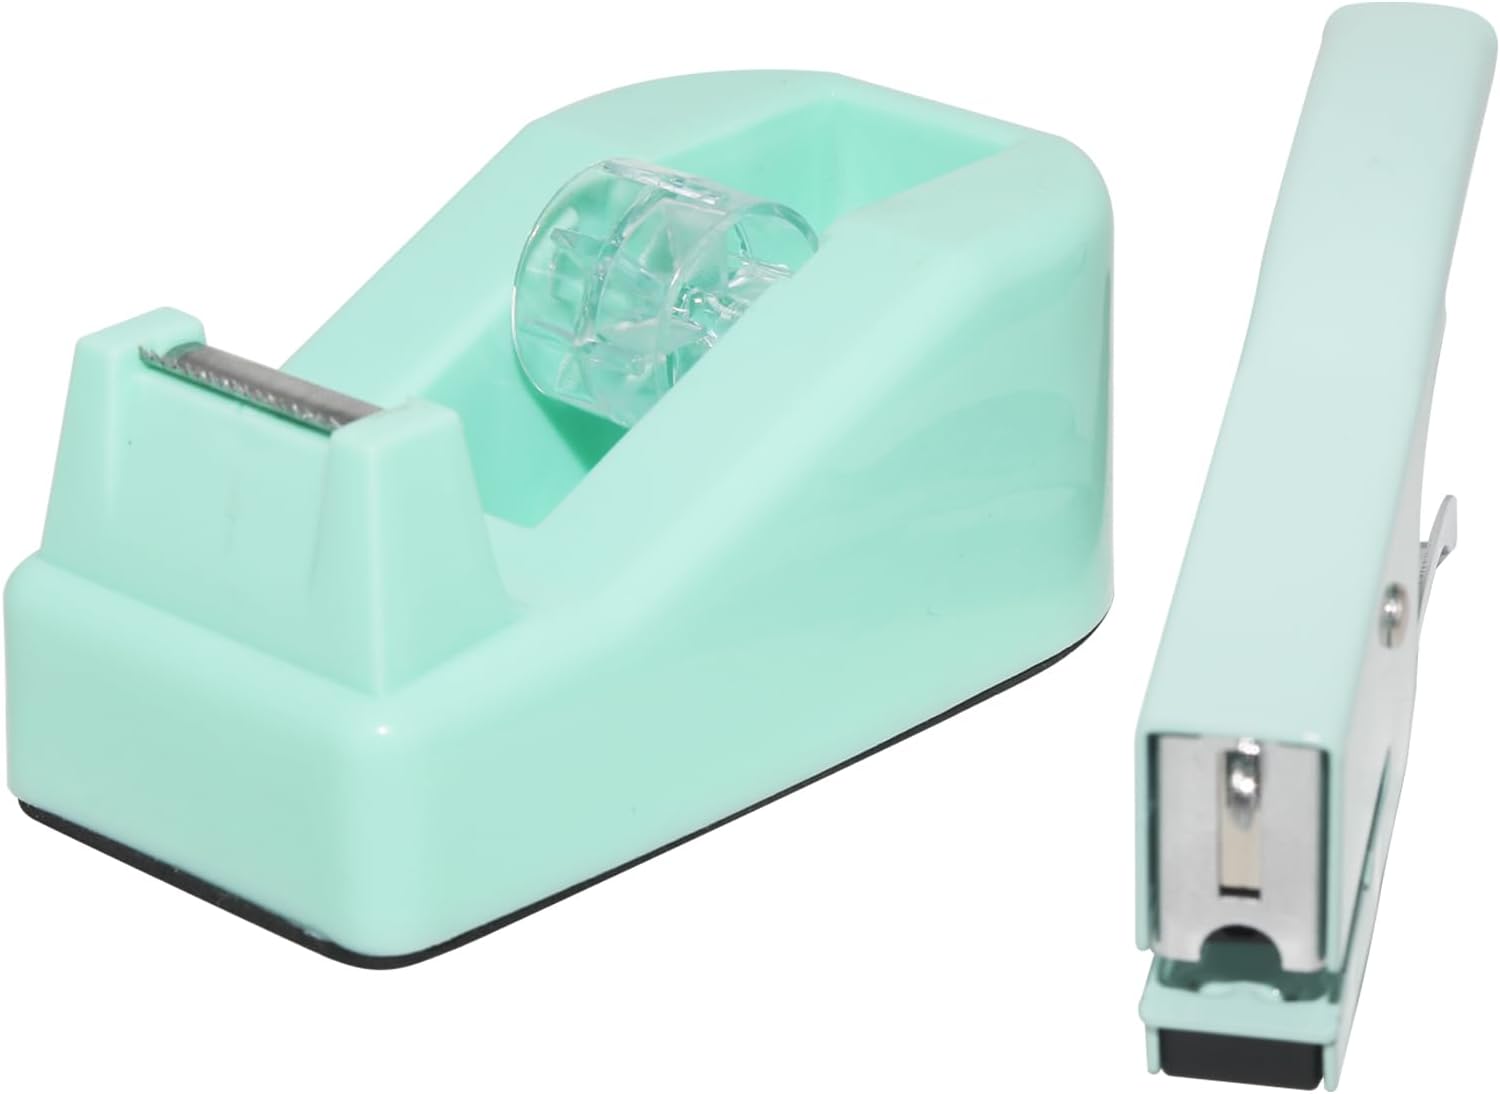 QILIMA Desktop Cute Office Tape Dispenser & Stapler Set - Mini Stapling Tool for One Hand Operation,Green